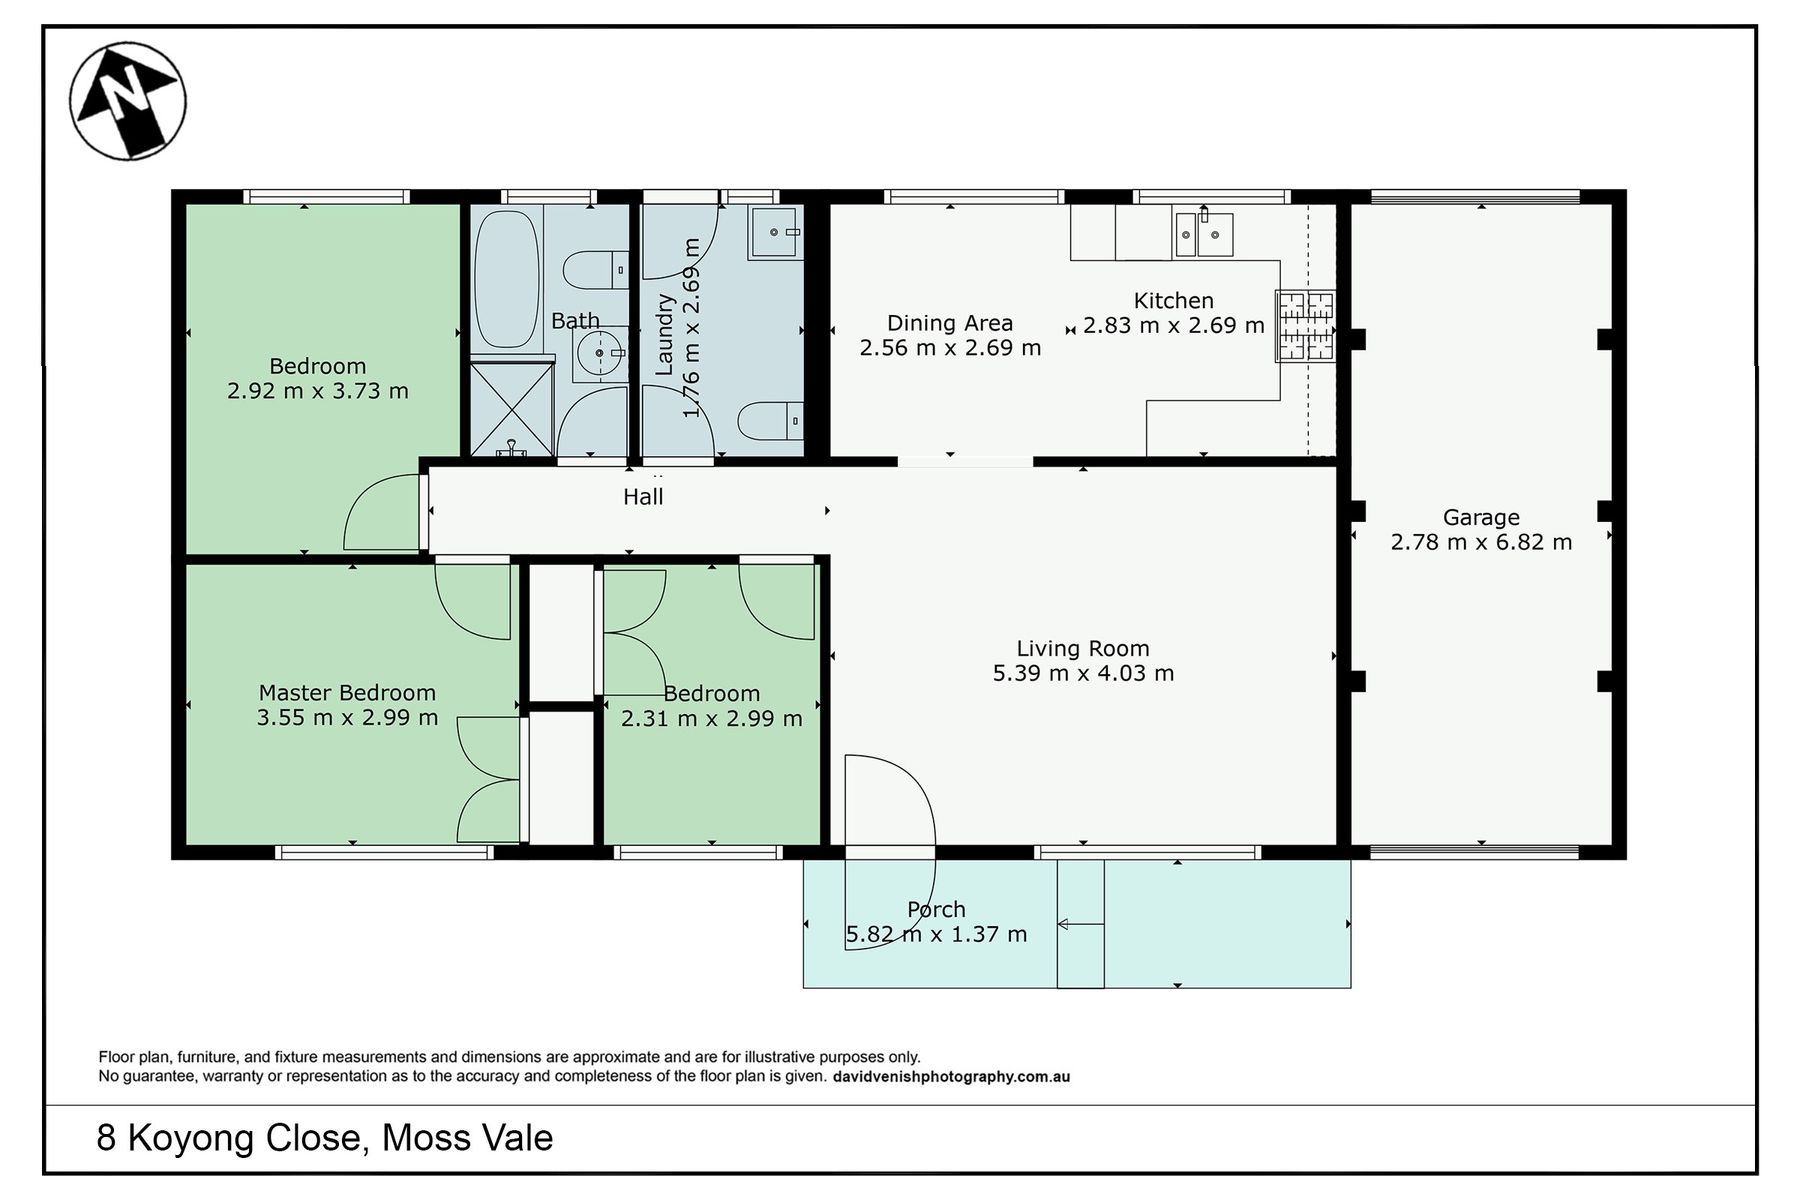 8 Koyong Close, Moss Vale   Floor Plan